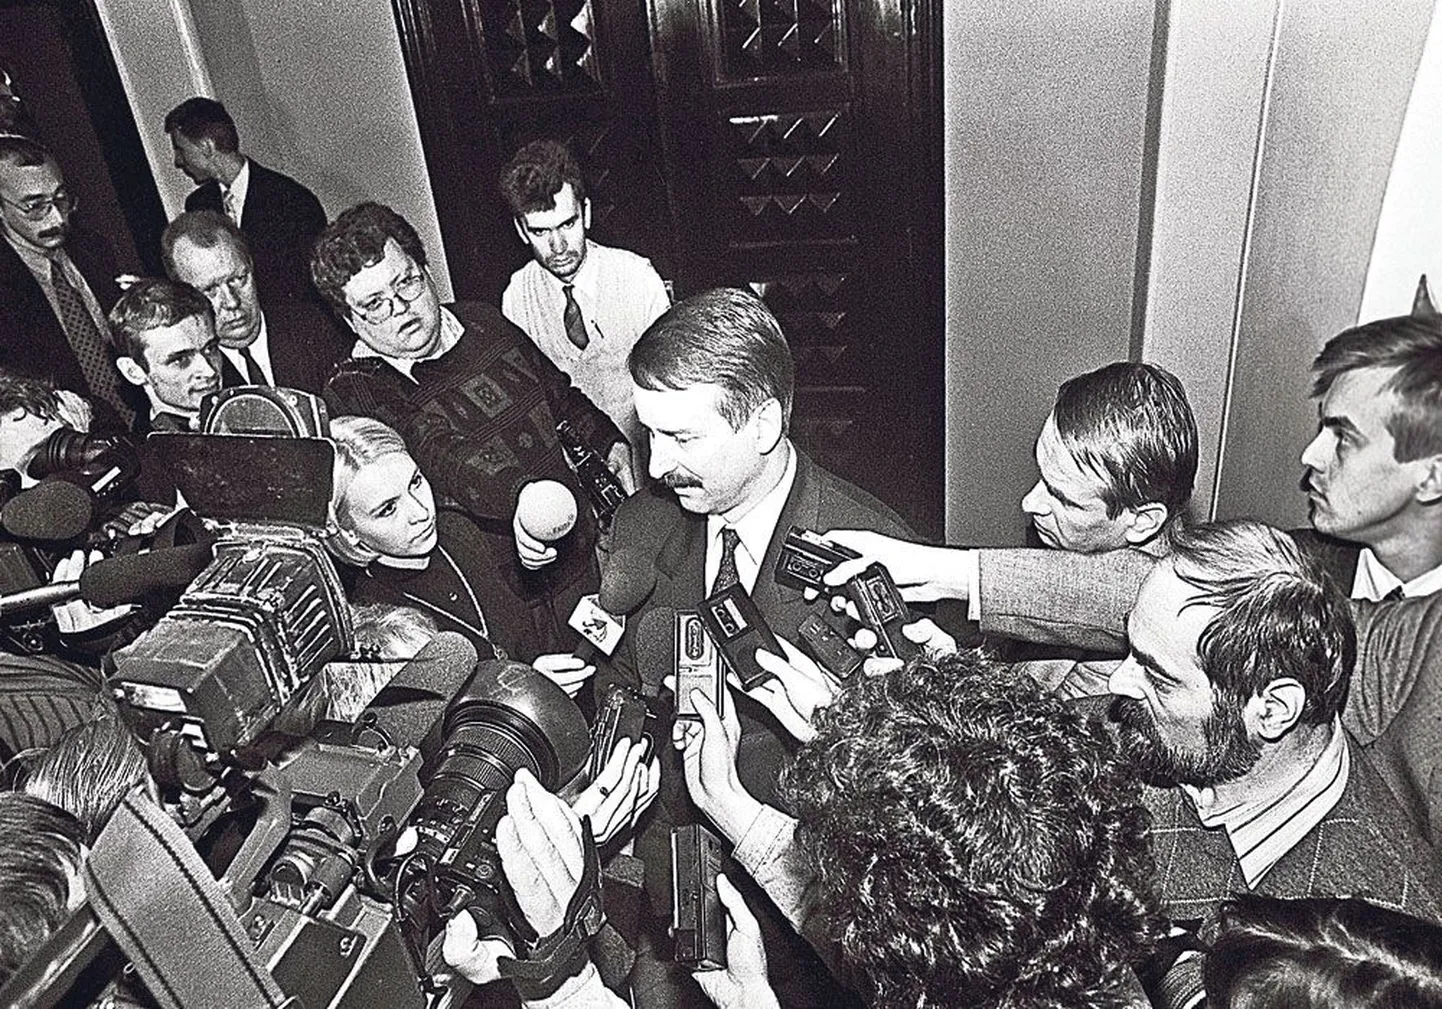 Kuu aega enne Reformierakonna asutamist, 13. oktoobril 1994 on Siim Kallas Isamaa peaministrikandidaadina riigikogus haledalt põrunud ja peab ajakirjanikele seletama, miks nii läks.